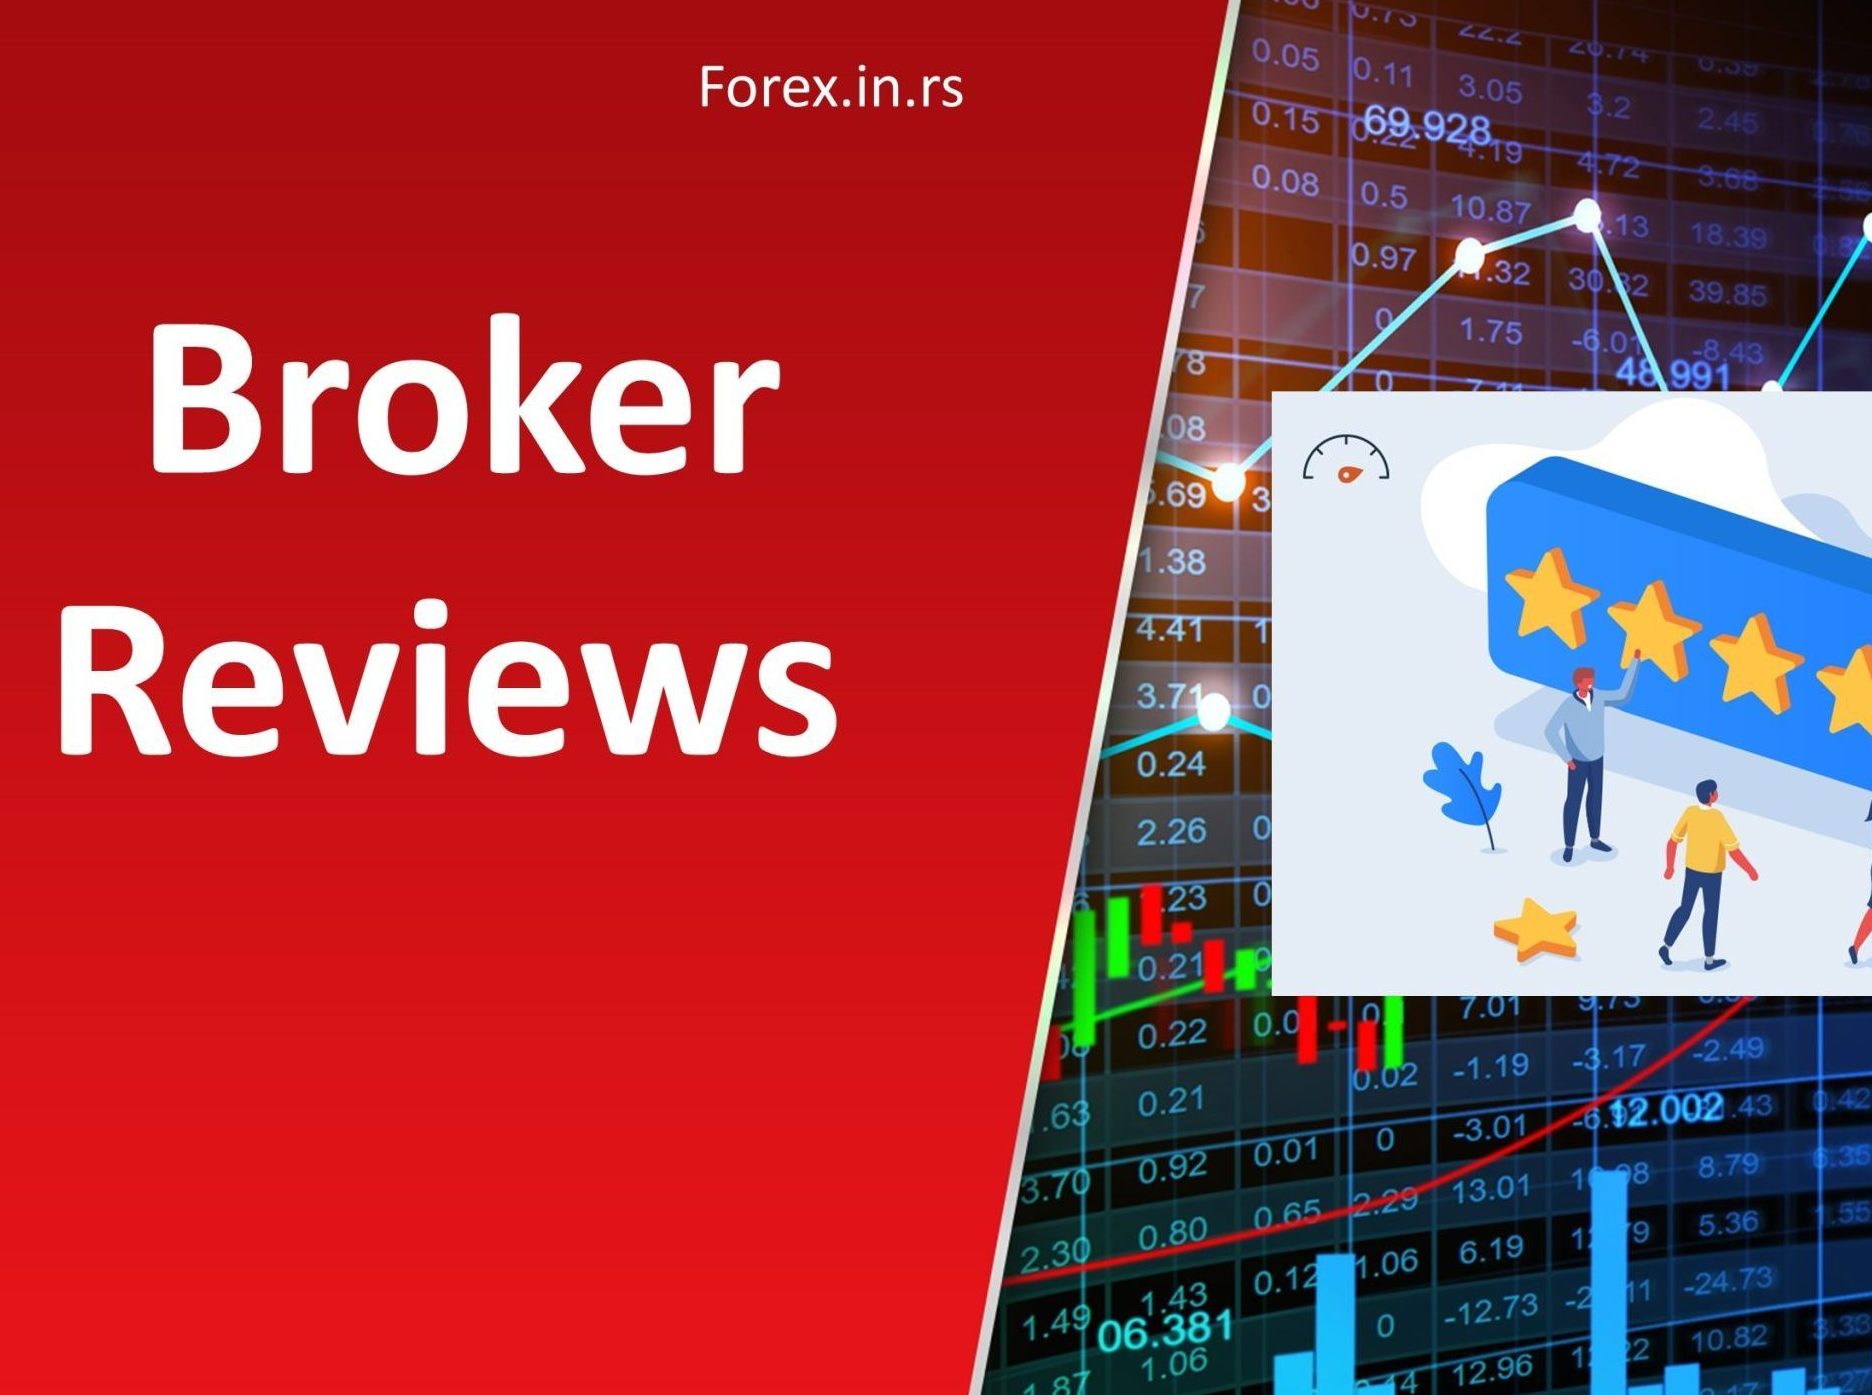 forex broker reviews articles list